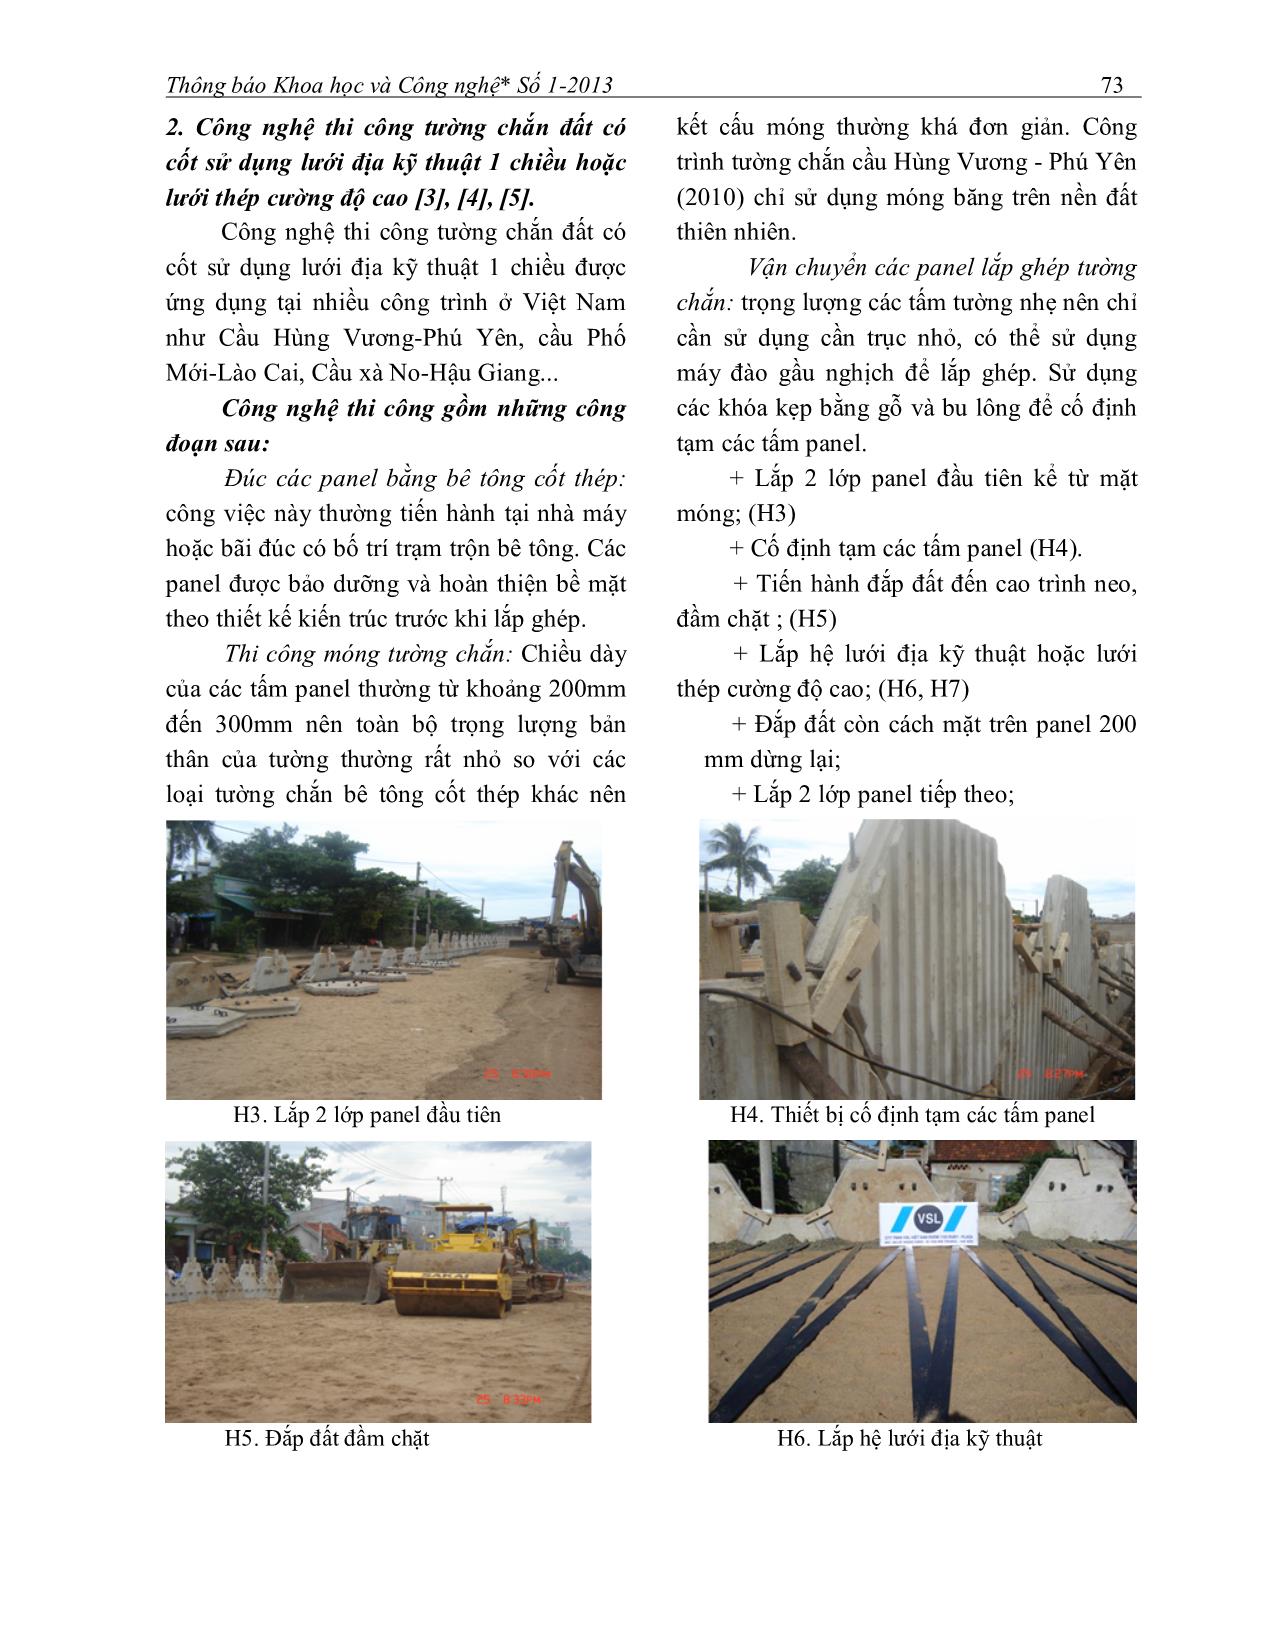 Công nghệ thi công tường chắn đất có cốt trang 2